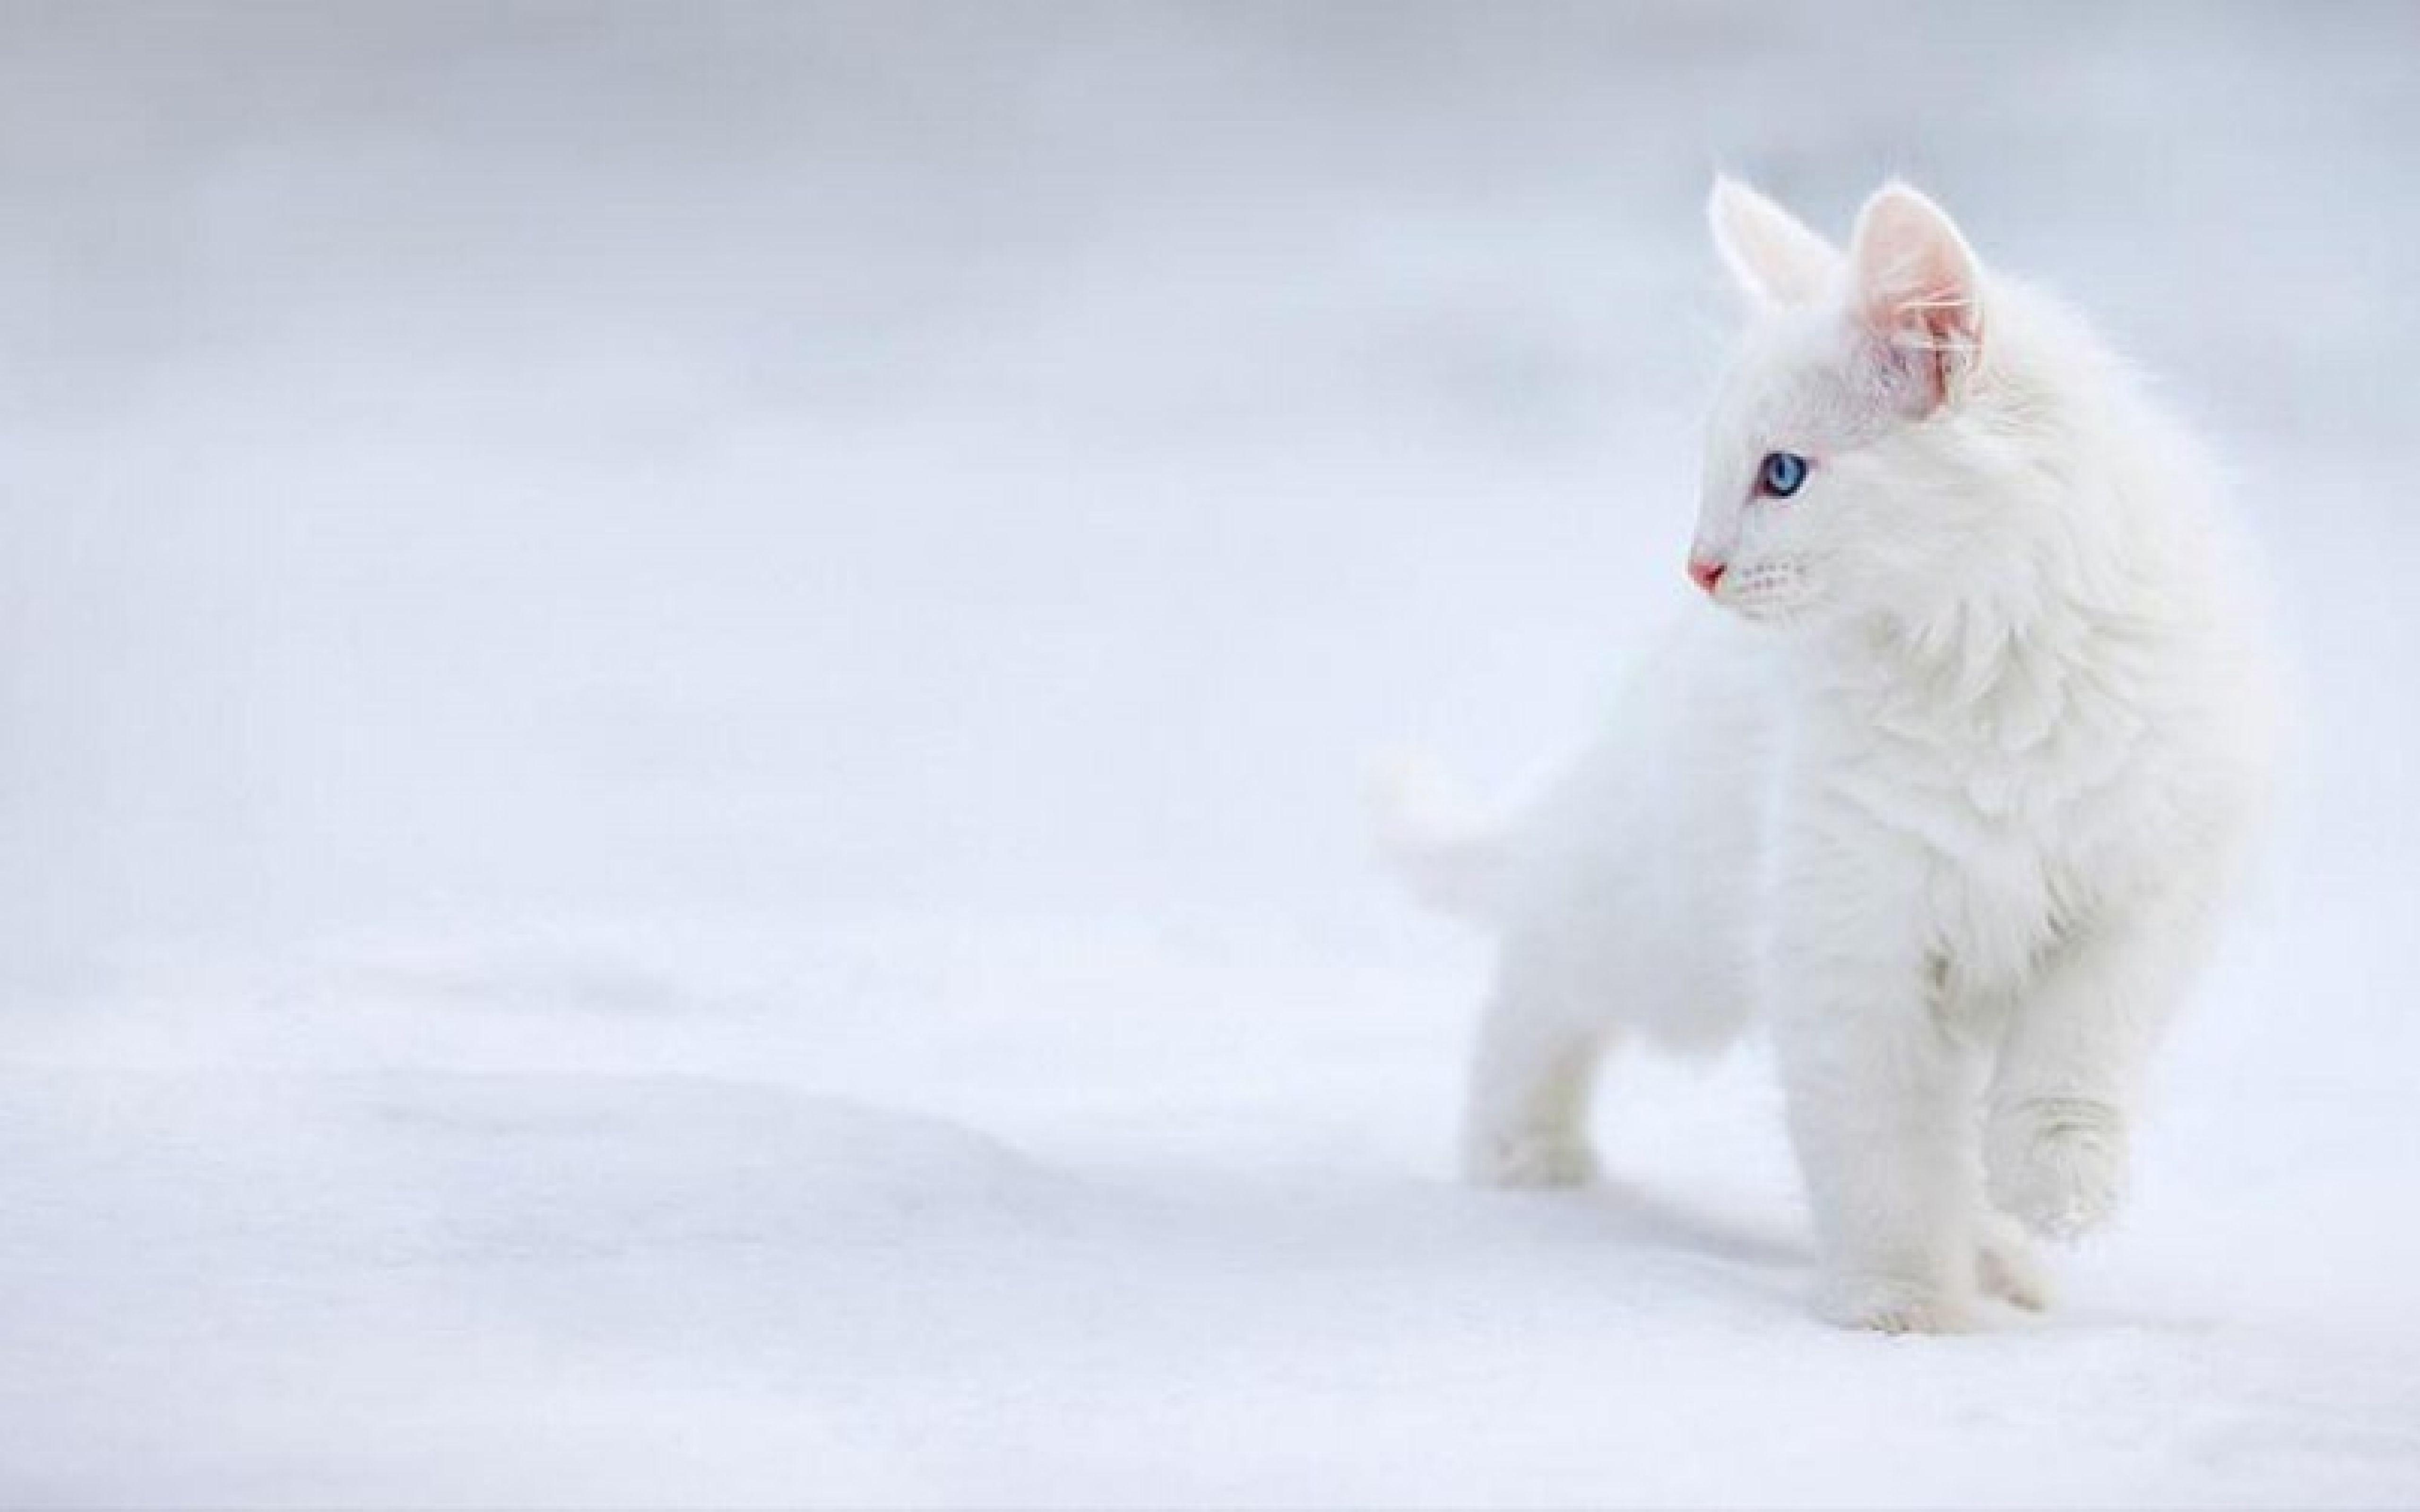 Hd Page Wallpaper Cute White Cat For Desktop Pics. Heavenwalls.com™